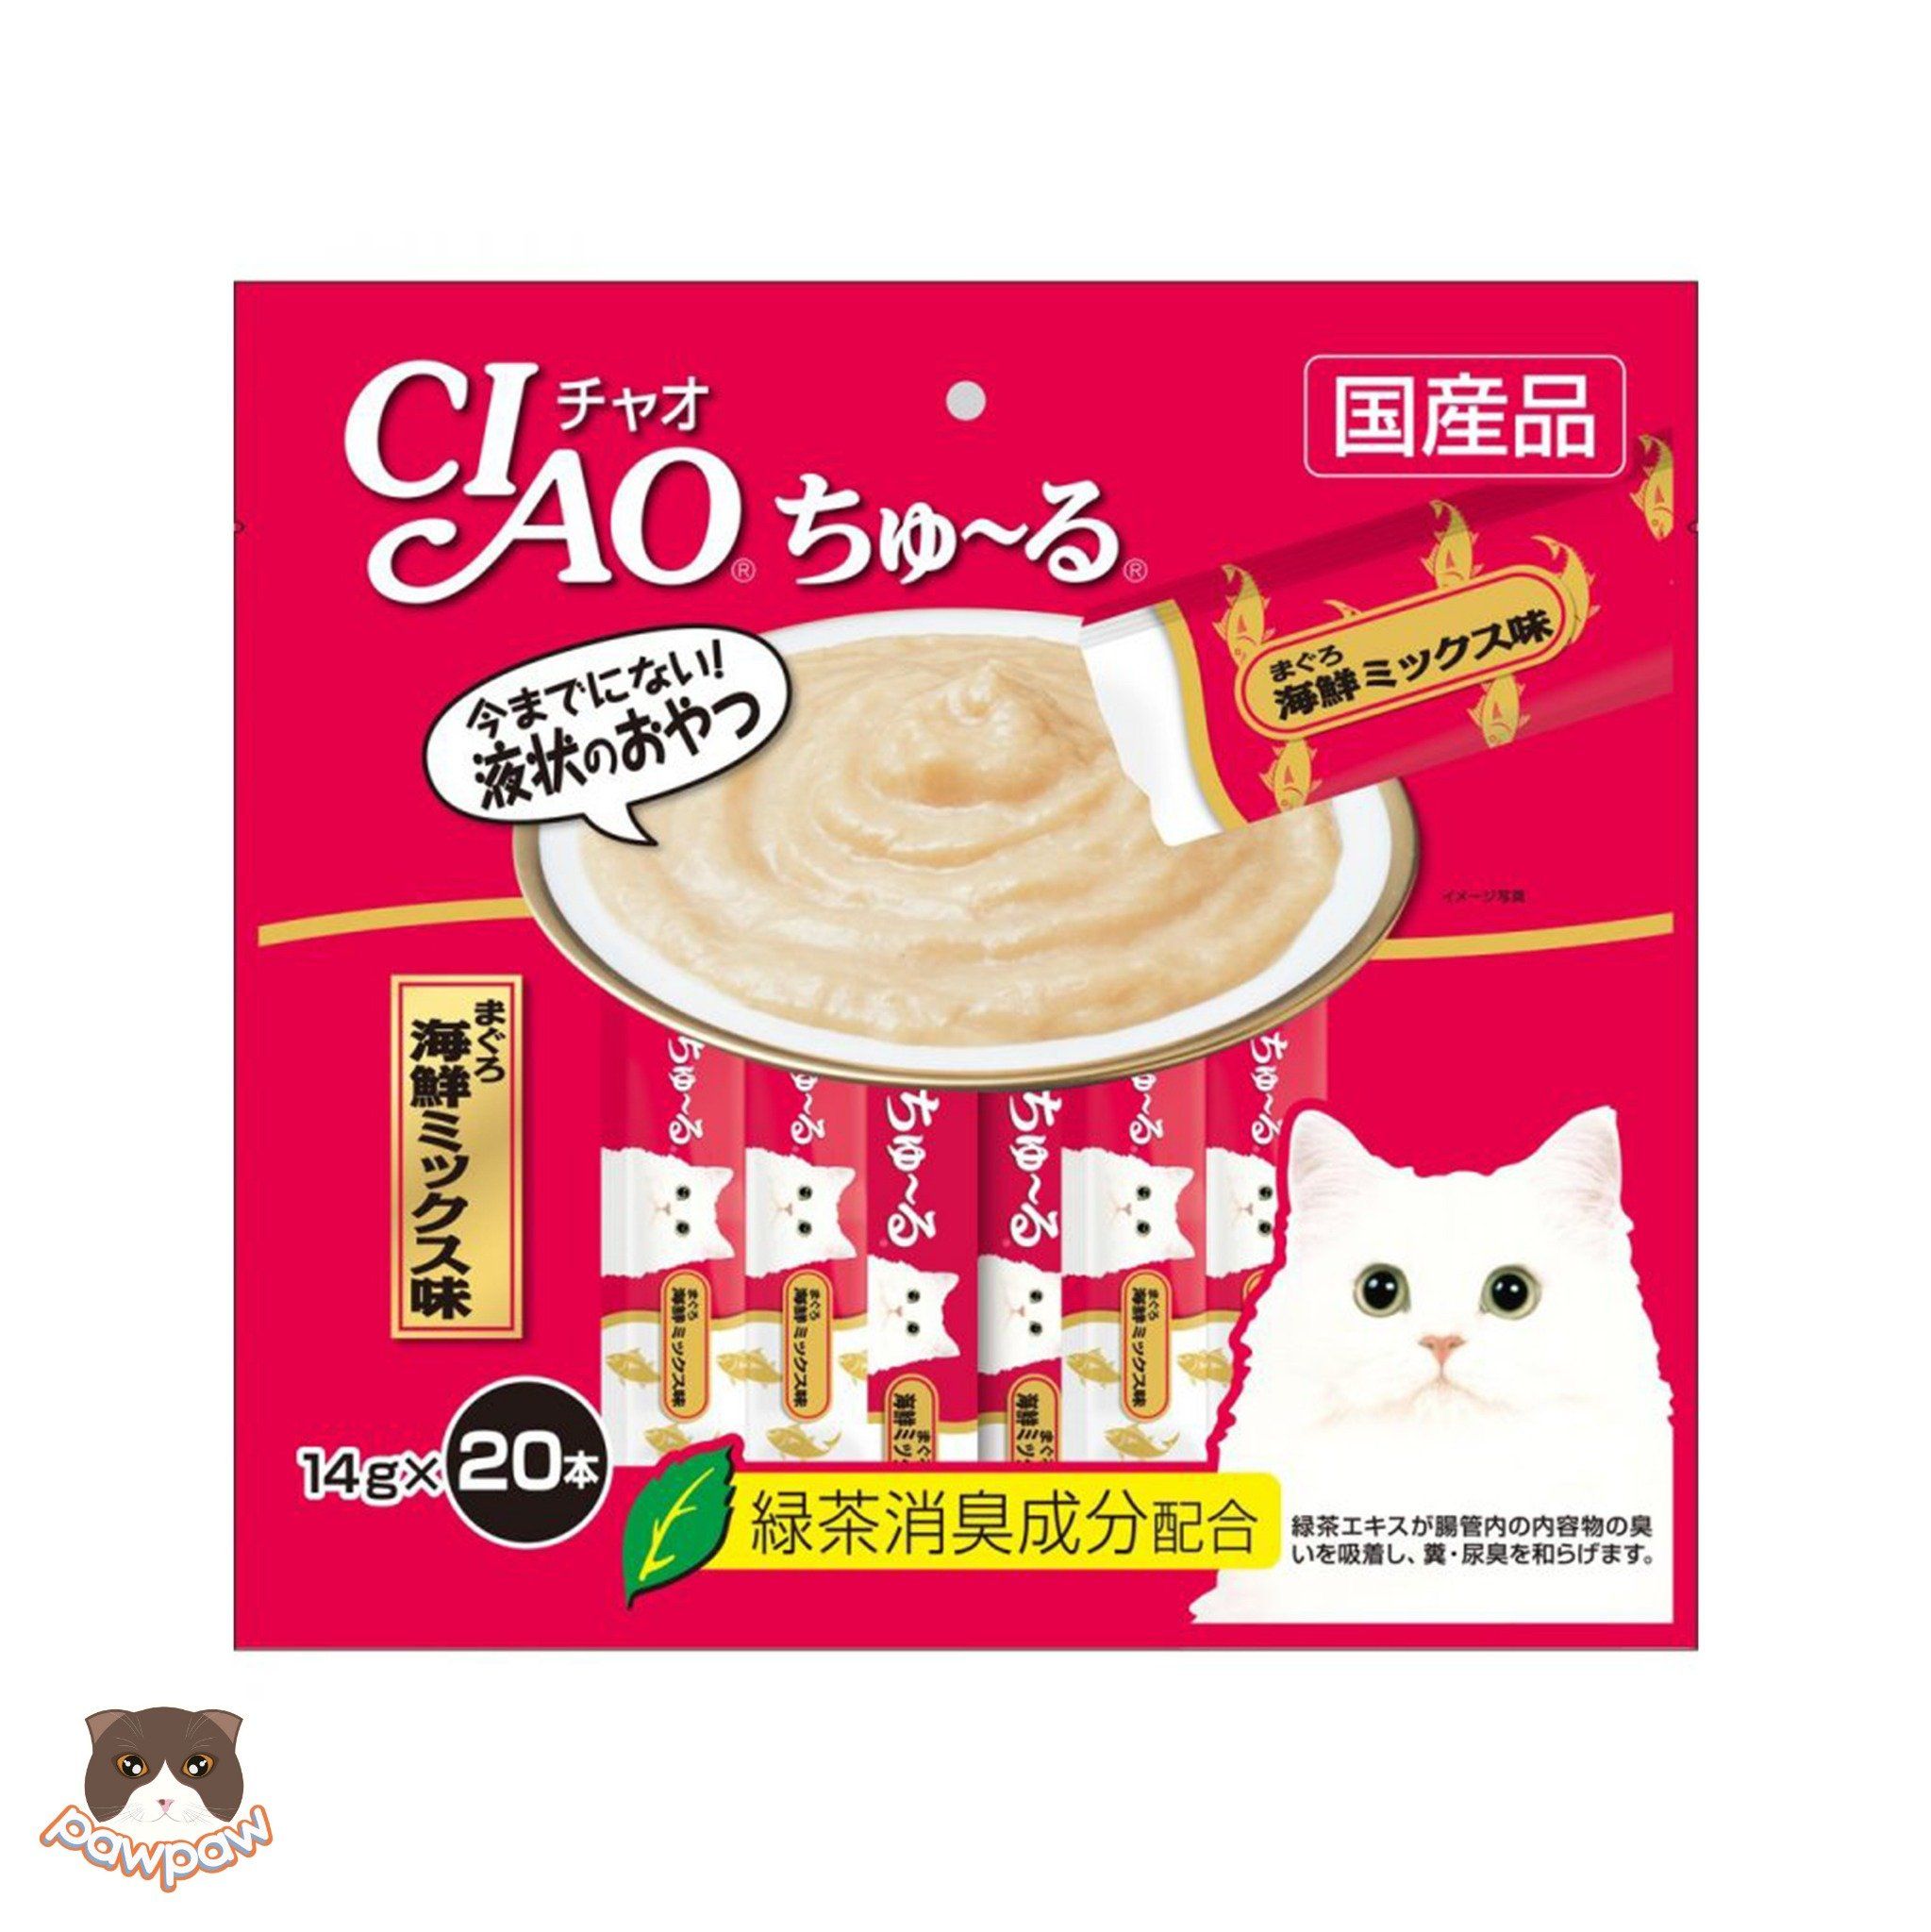  Súp thưởng Ciao Churu gói 20 thanh cho chó mèo 